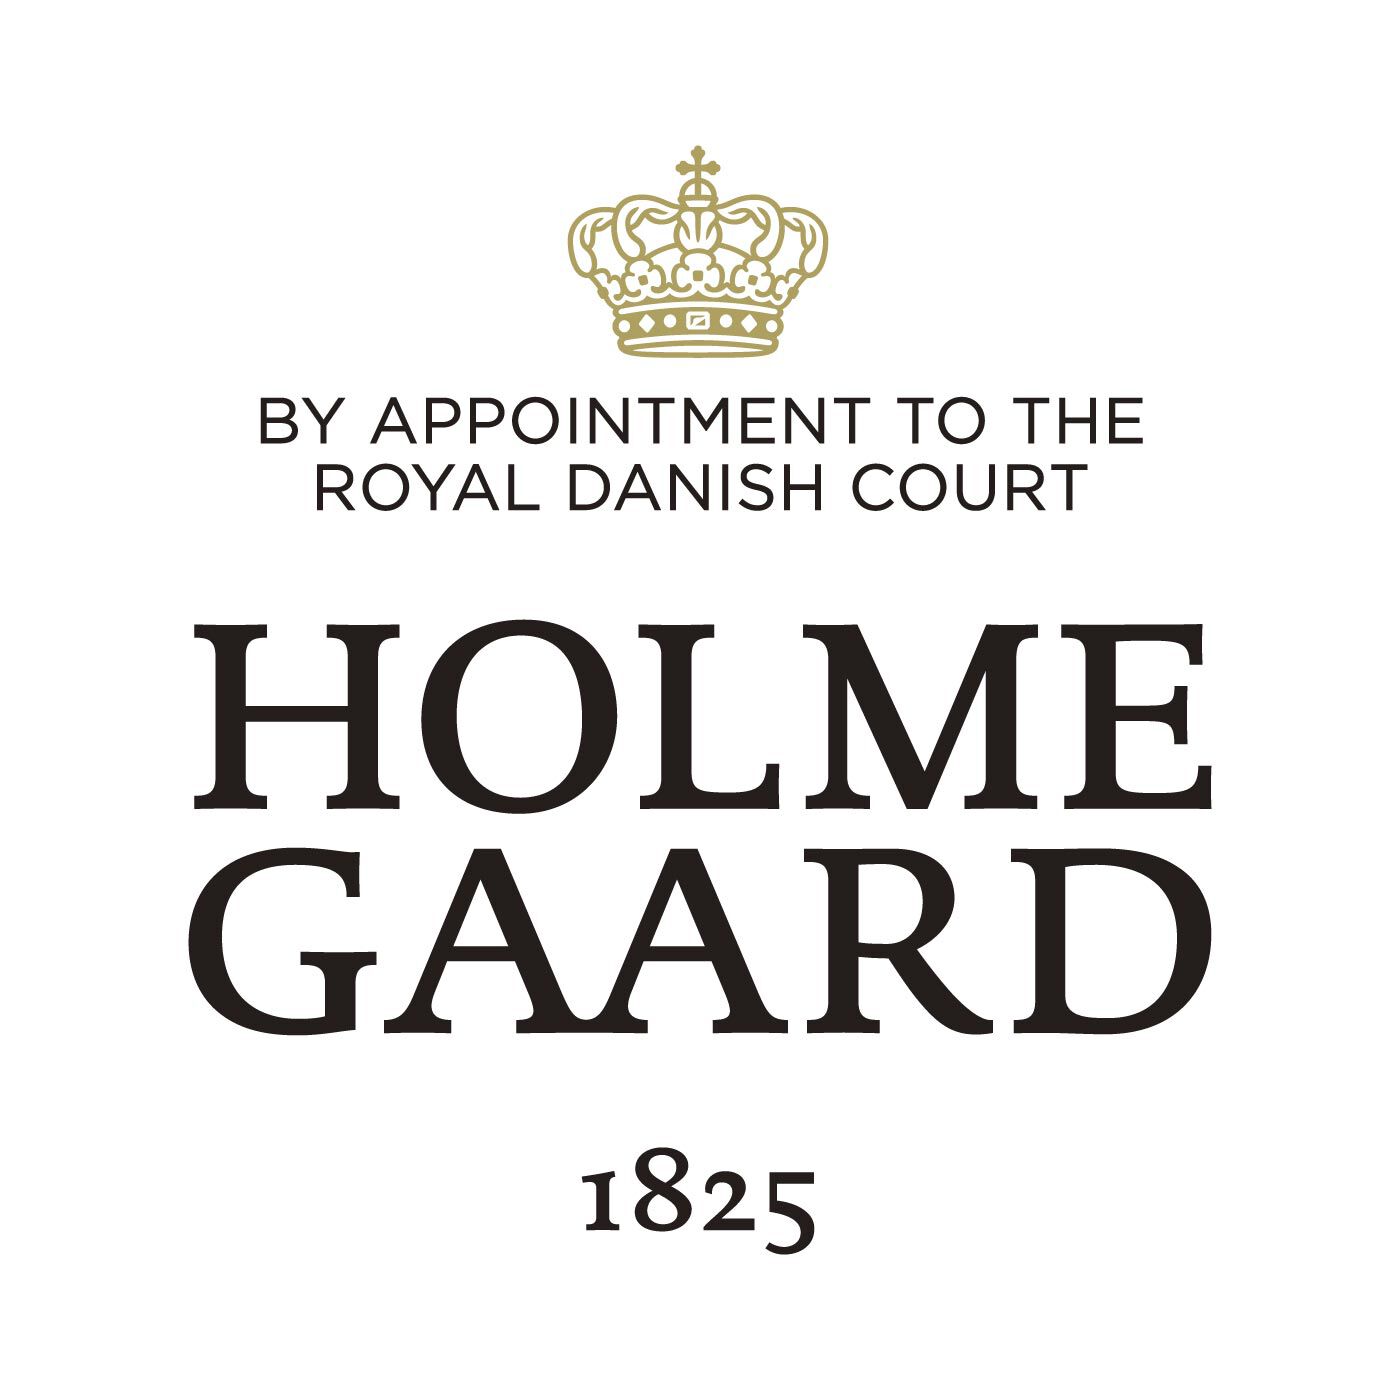 SeeMONO|おうち時間の素敵な夜に 北欧のキャンドル文化を受け継いだオイルランタン／ホルムガード|HOLMEGAARD（ホルムガード）は、1825年にデンマークに生まれた伝統あるガラスブランドです。1900年代、多くの芸術家が手掛け始めるホルムガードの商品は、そのクオリティの高さからデンマーク王室 御用達ブランドに選ばれました。熟練の職人たちによる吹きガラス製法で生み出されるユニークなデ ザインのガラス製品は世界中の美術館に所蔵されています。